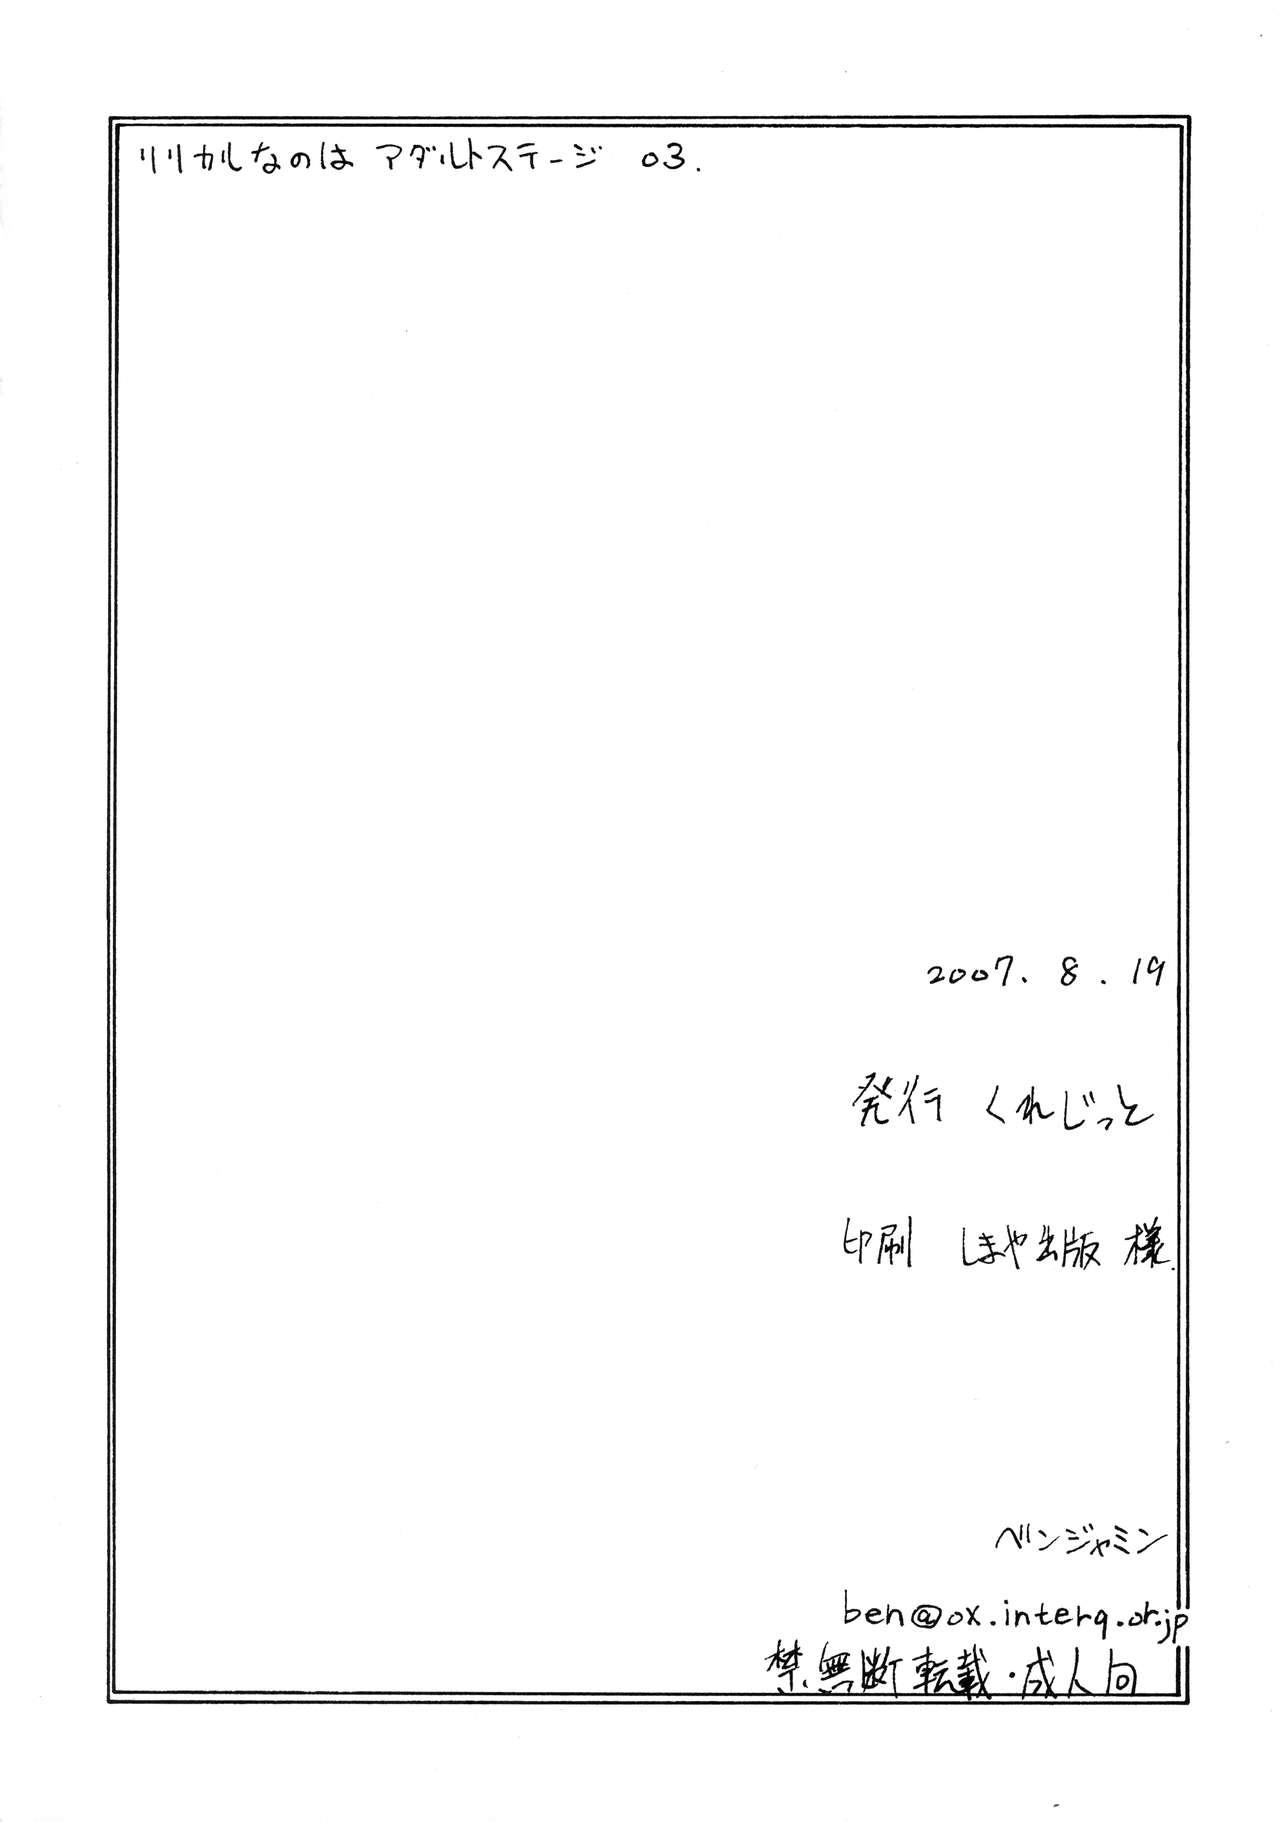 Mahou Shoujo Lyrical Nanoha Adult Stage 03 29